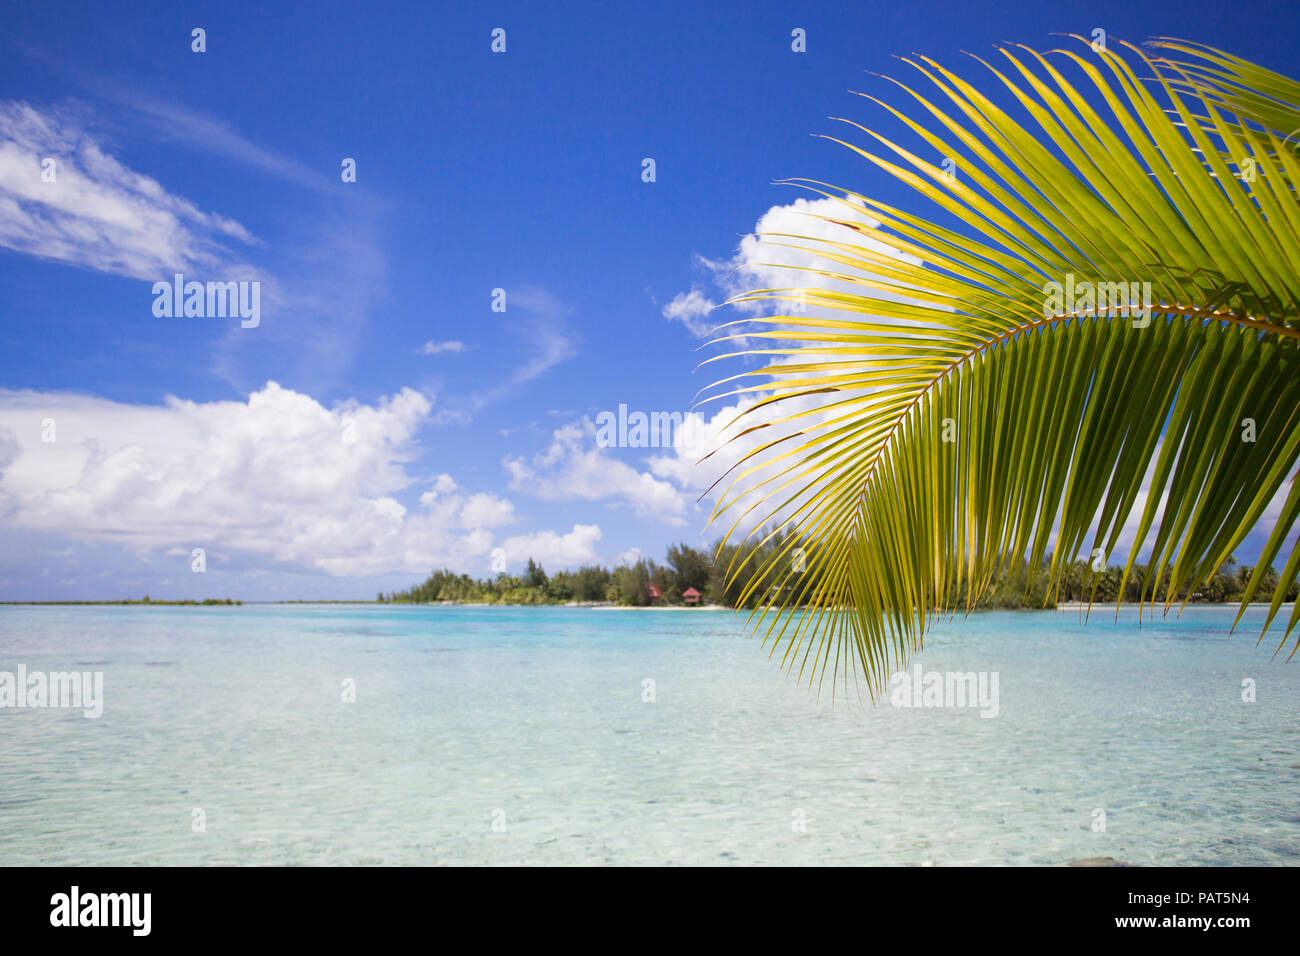 La Polynésie française, de la société, l'île de Bora Bora. Hydropanorama pittoresque avec palmier. Banque D'Images